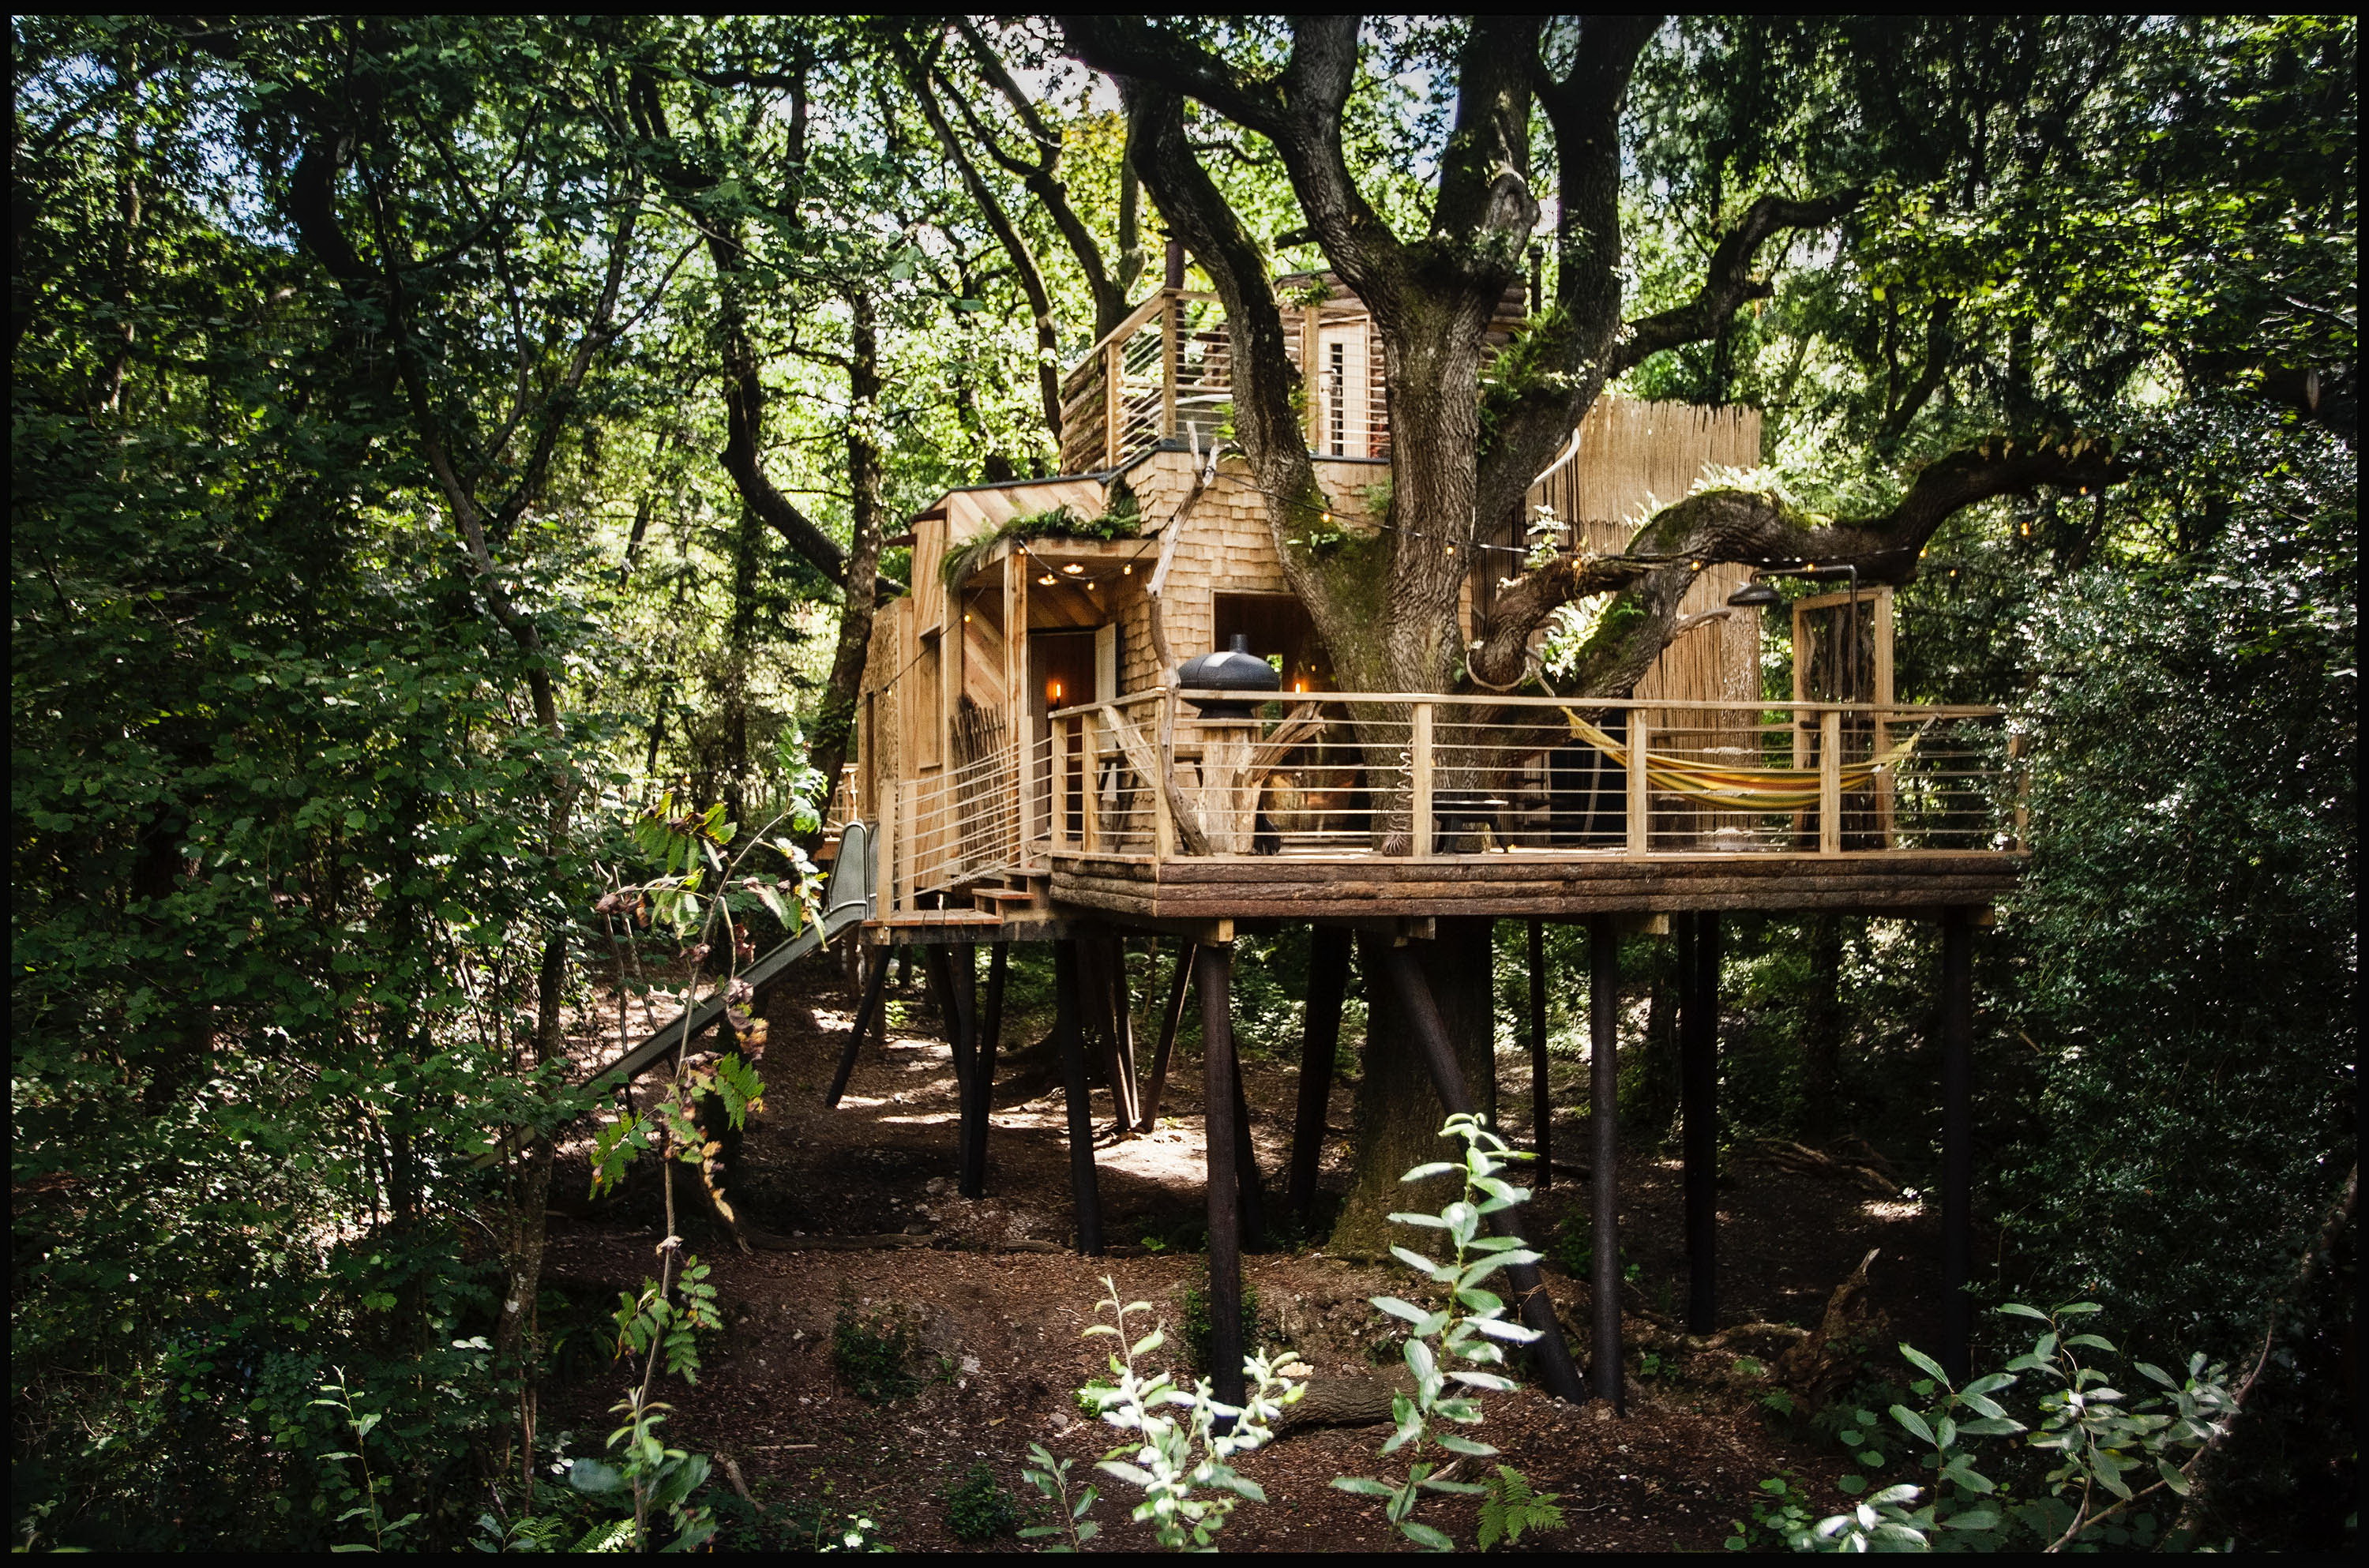 Elkészült az igazi Tarzan-ház - Ön lakna egy fa tetején? - Blikk